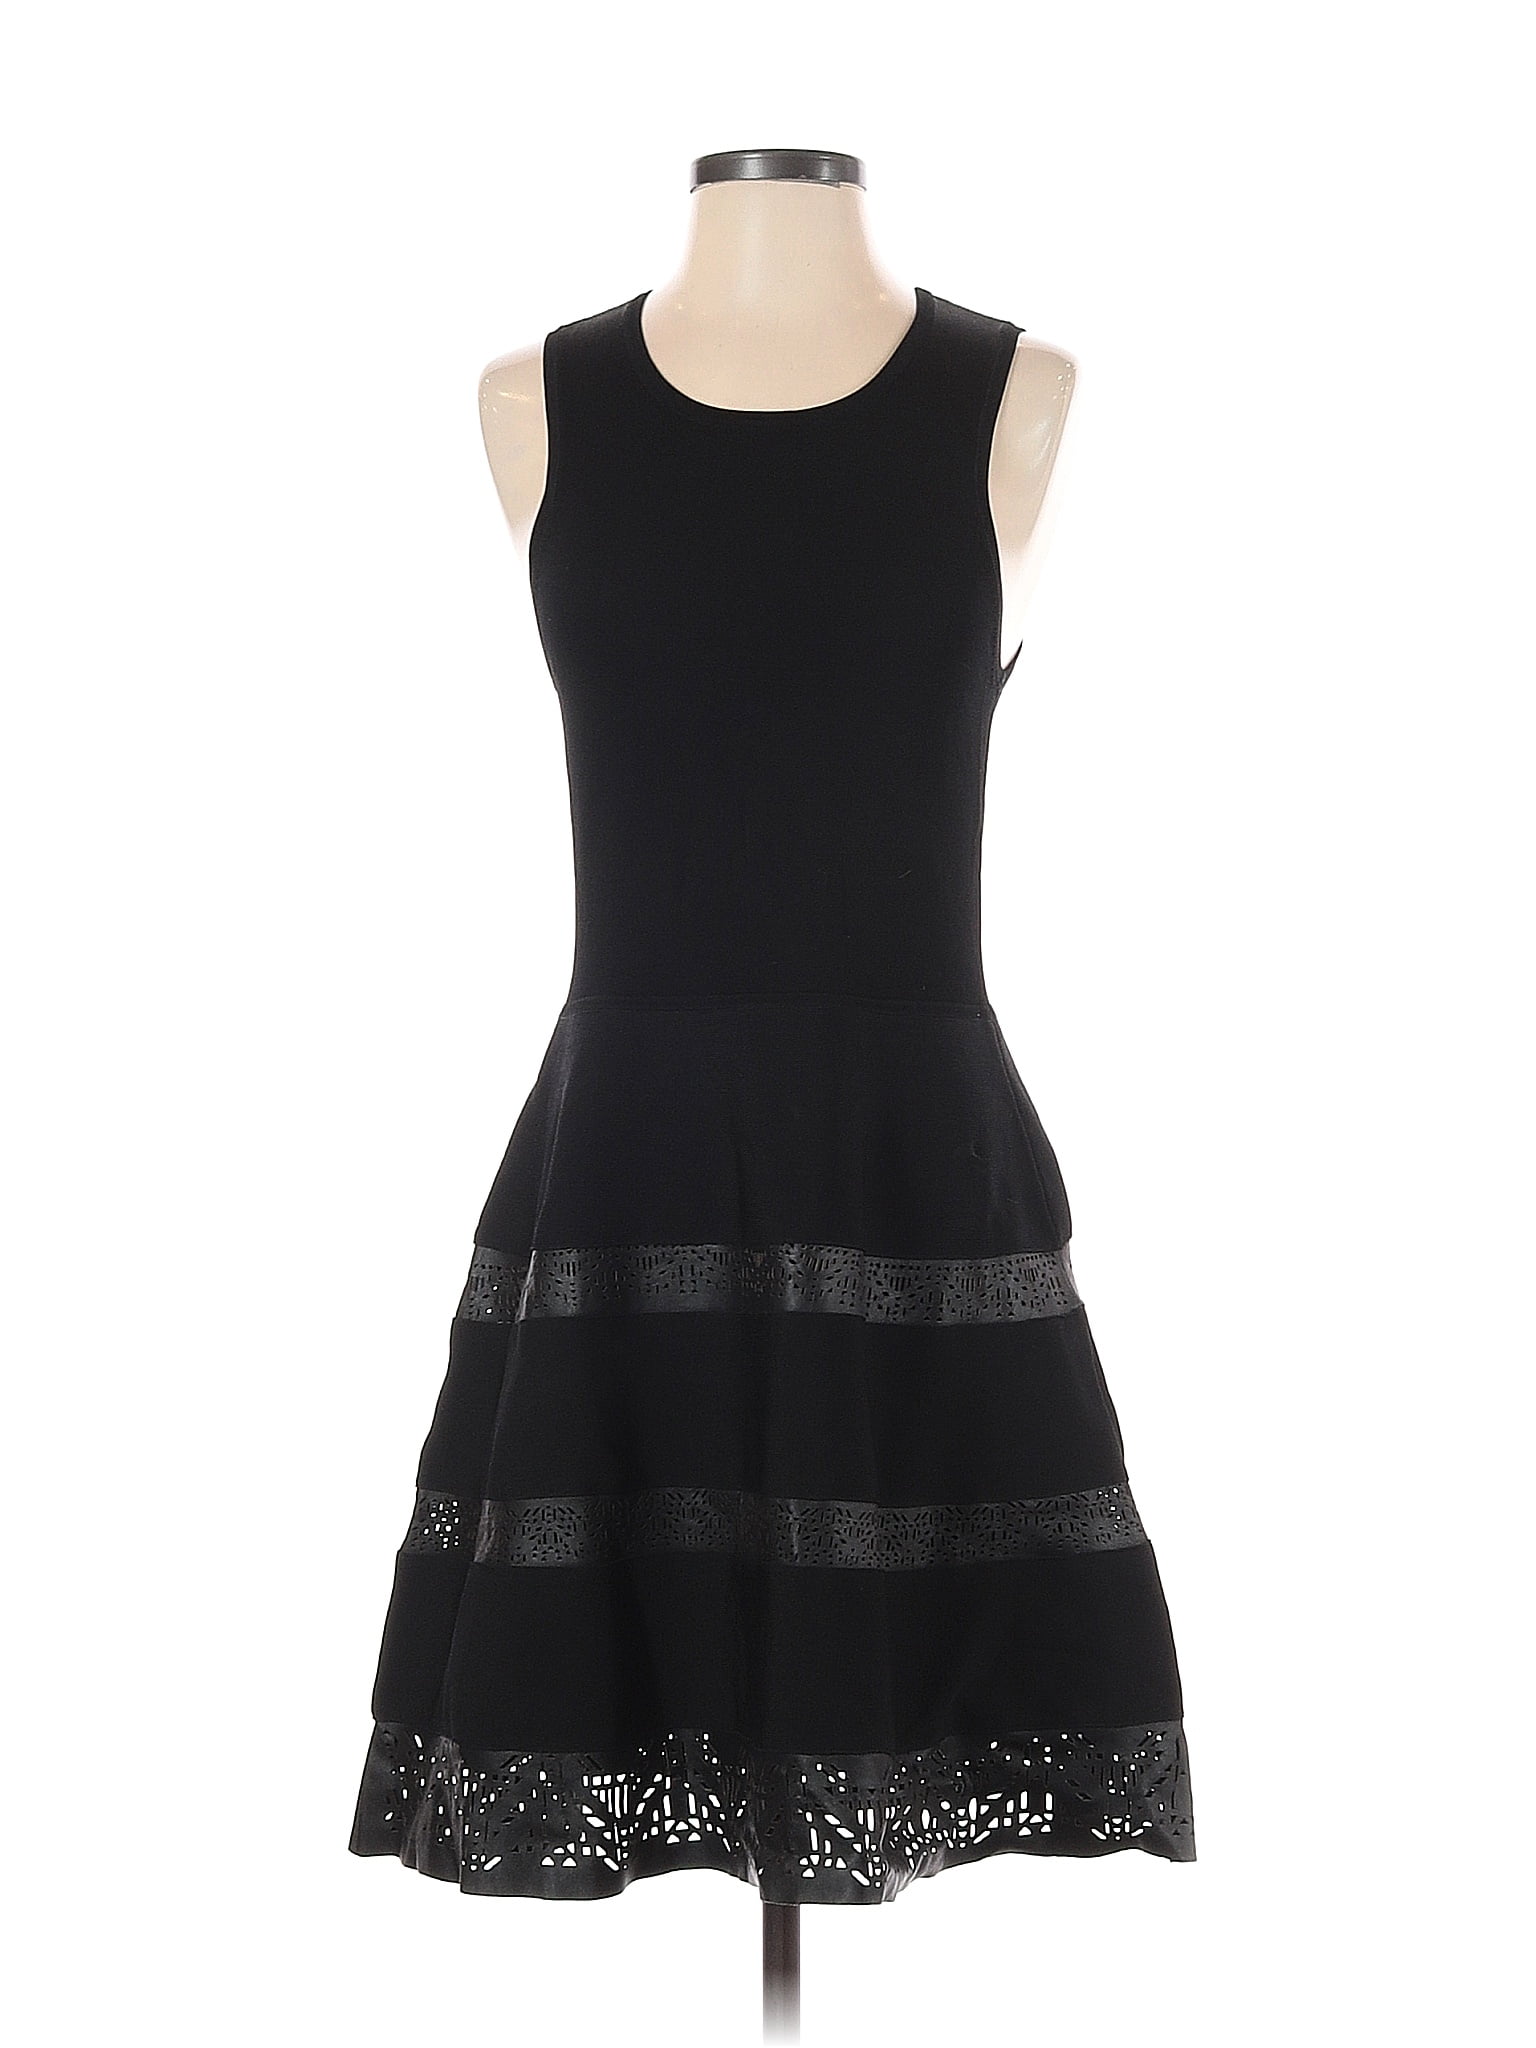 Parker Solid Black Cocktail Dress Size S - 81% off | thredUP